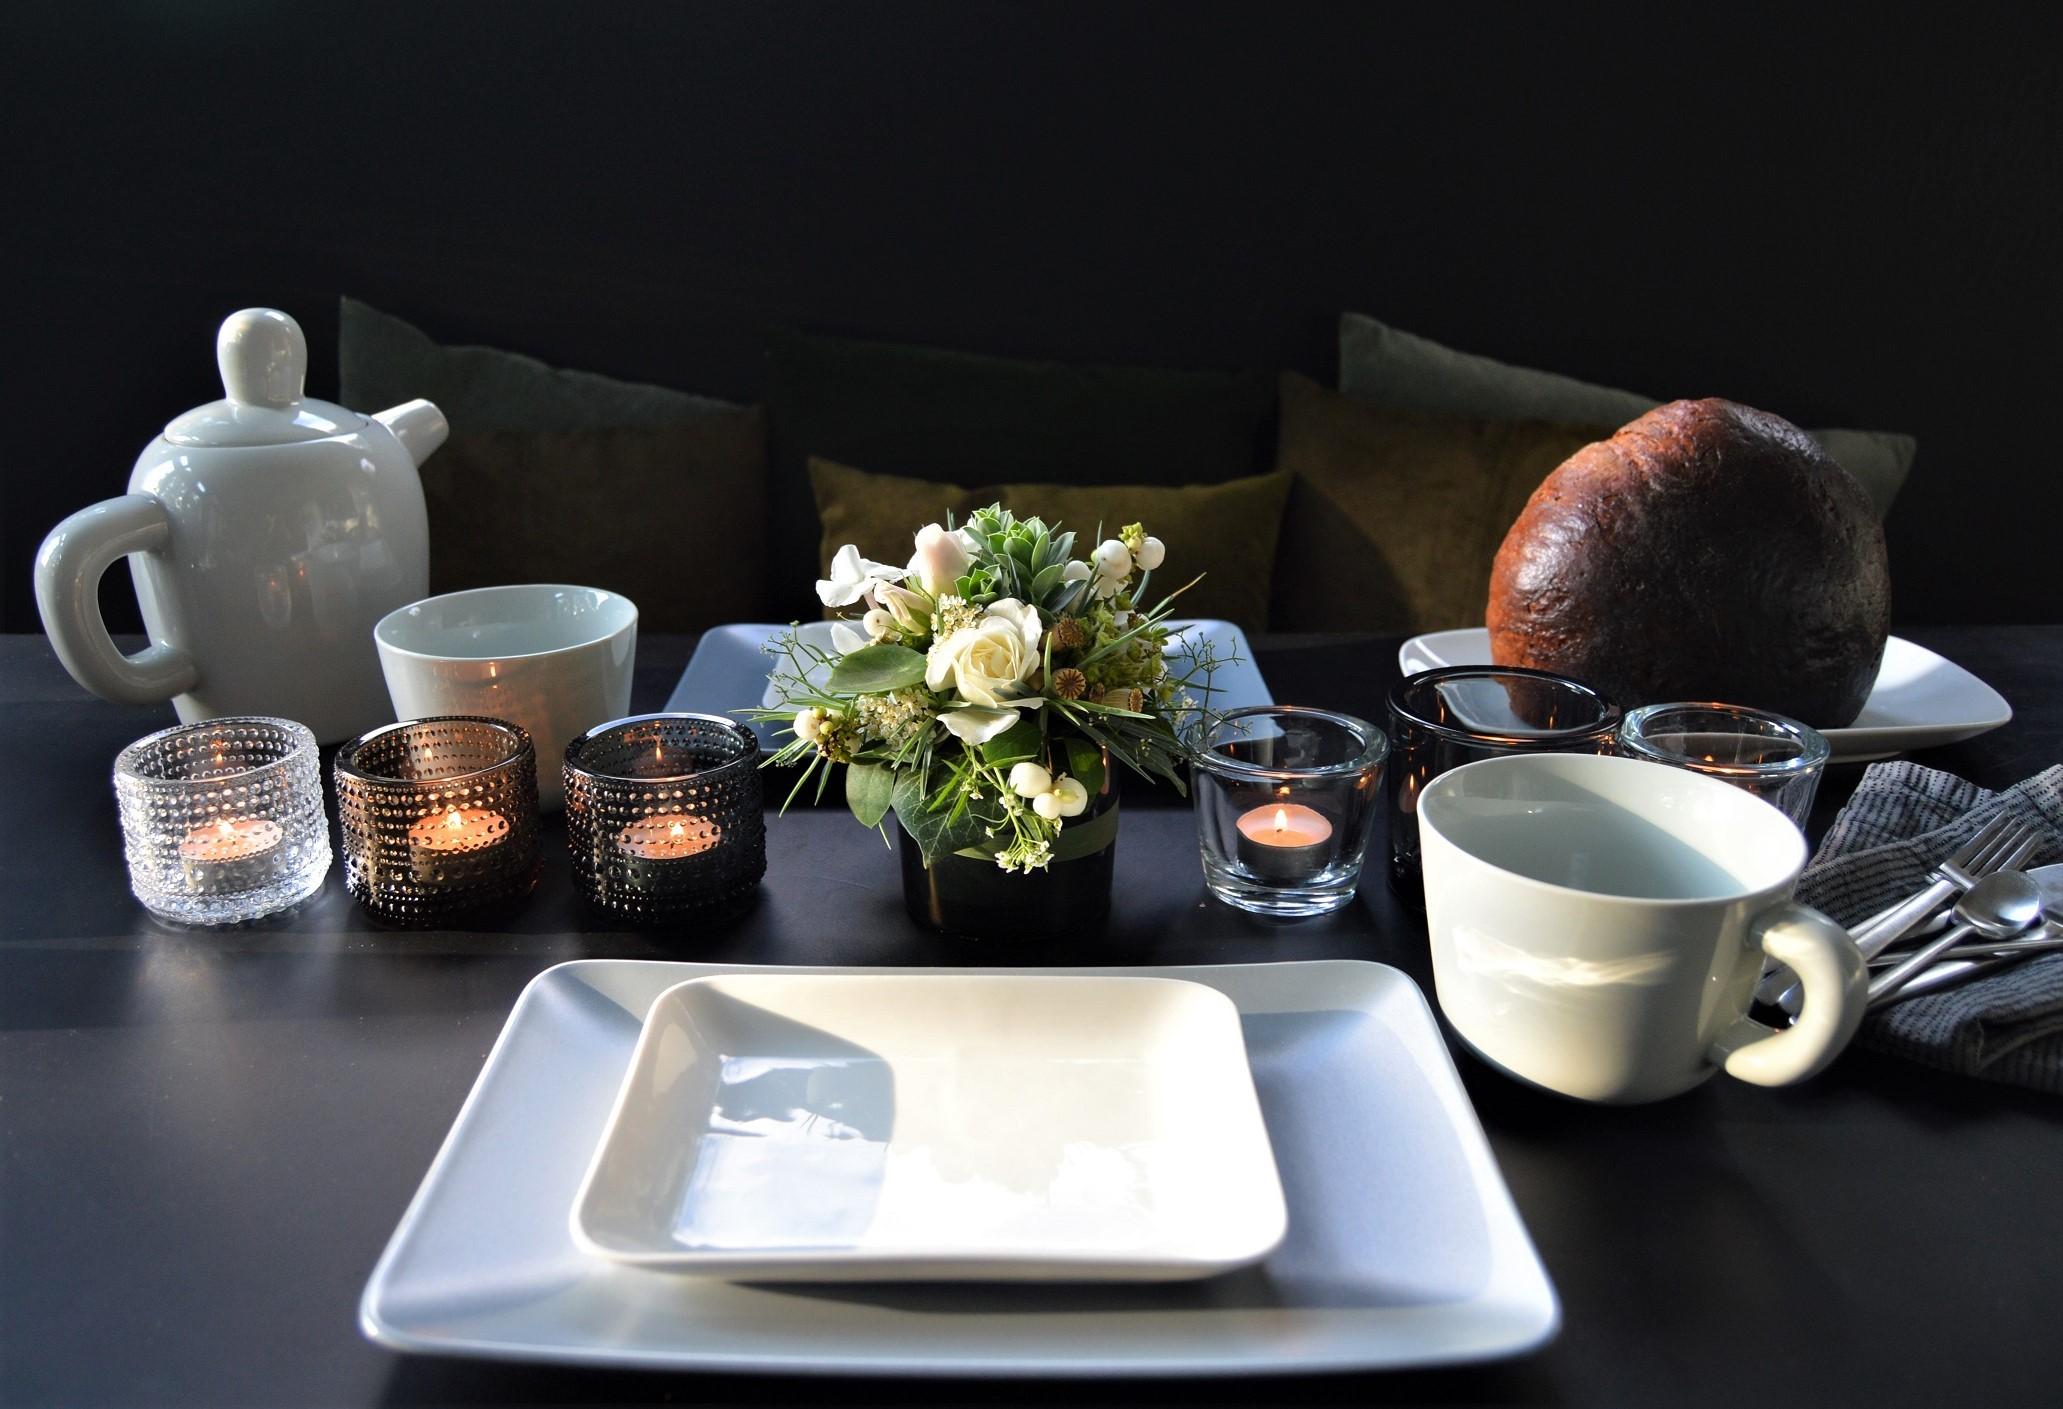 Frühstückstisch mit kleinem #diy Blumengesteck im #Teelichtglas #Tischdeko #muuto #sundaymood